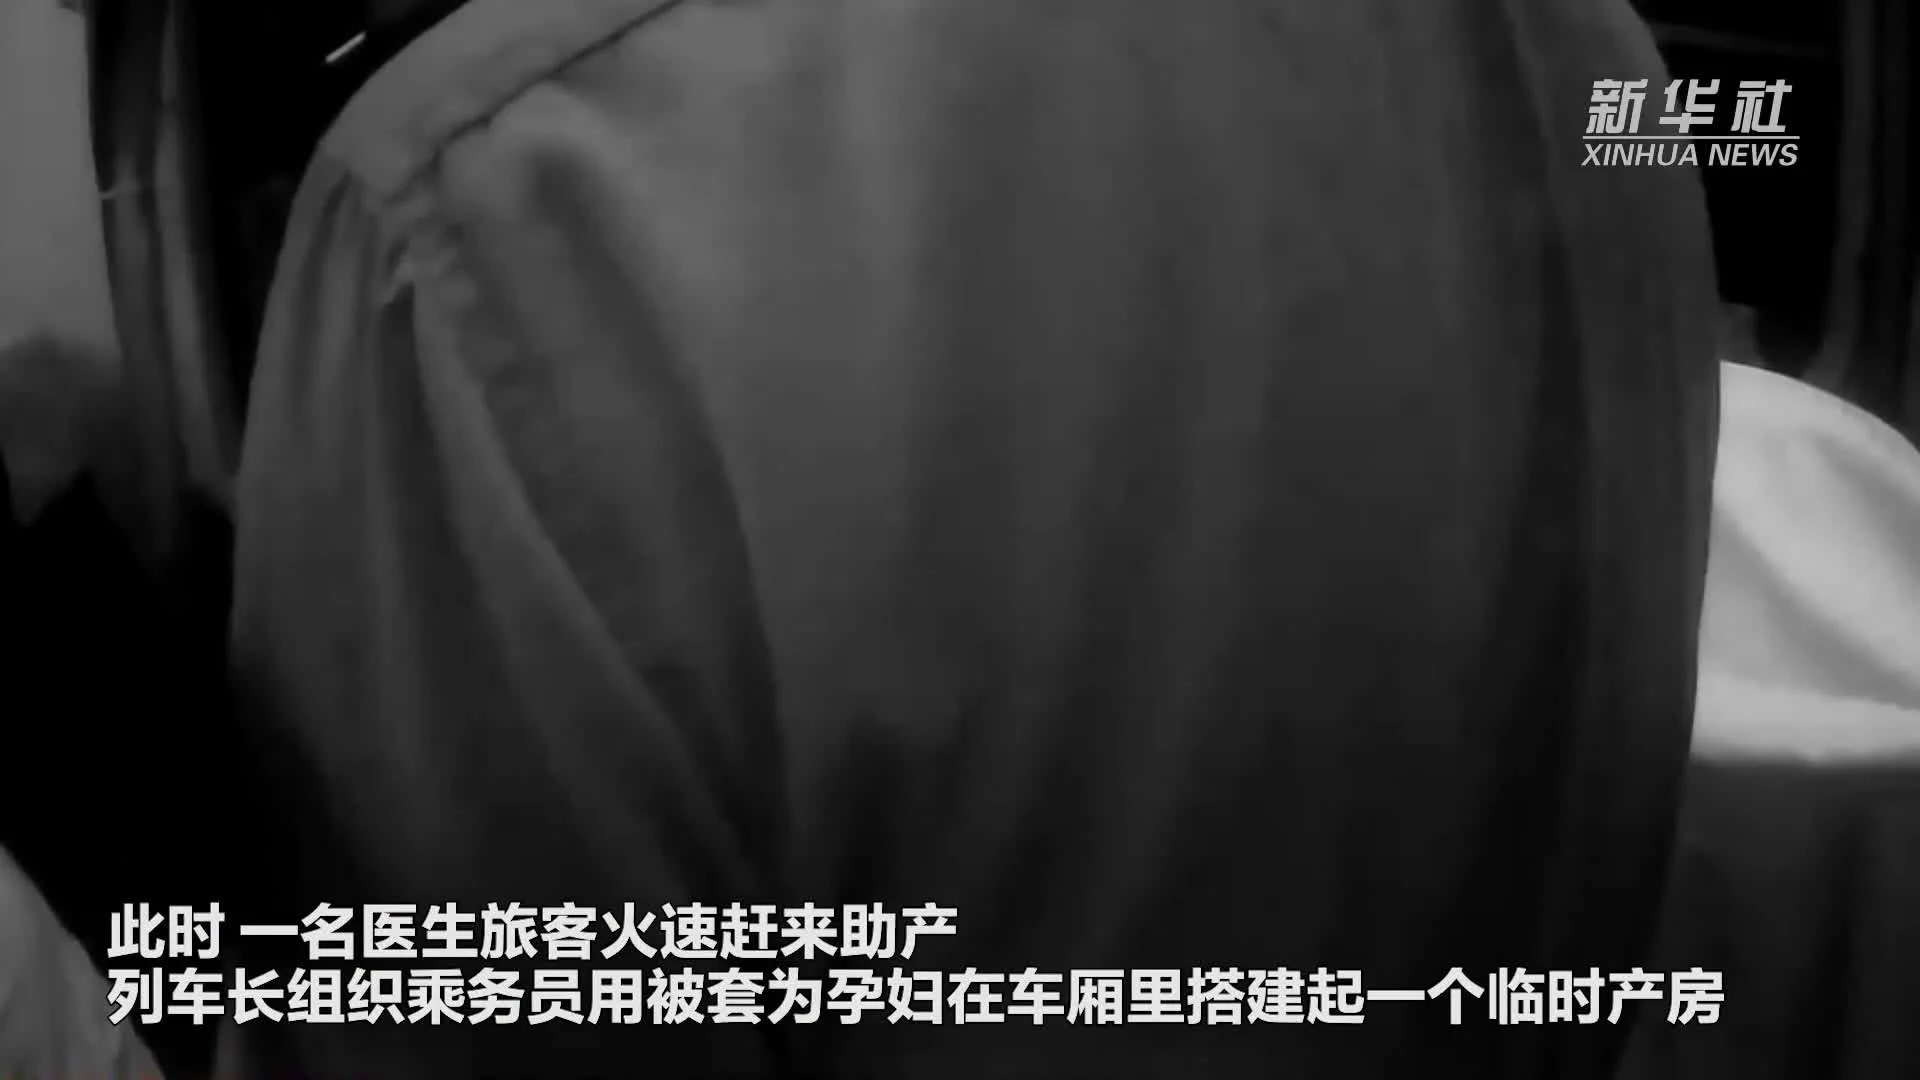 ลุ้นทั้งขบวน! รถไฟจีนผุด 'ห้องคลอดชั่วคราว' ช่วยหญิงเจ็บท้องฉับพลัน